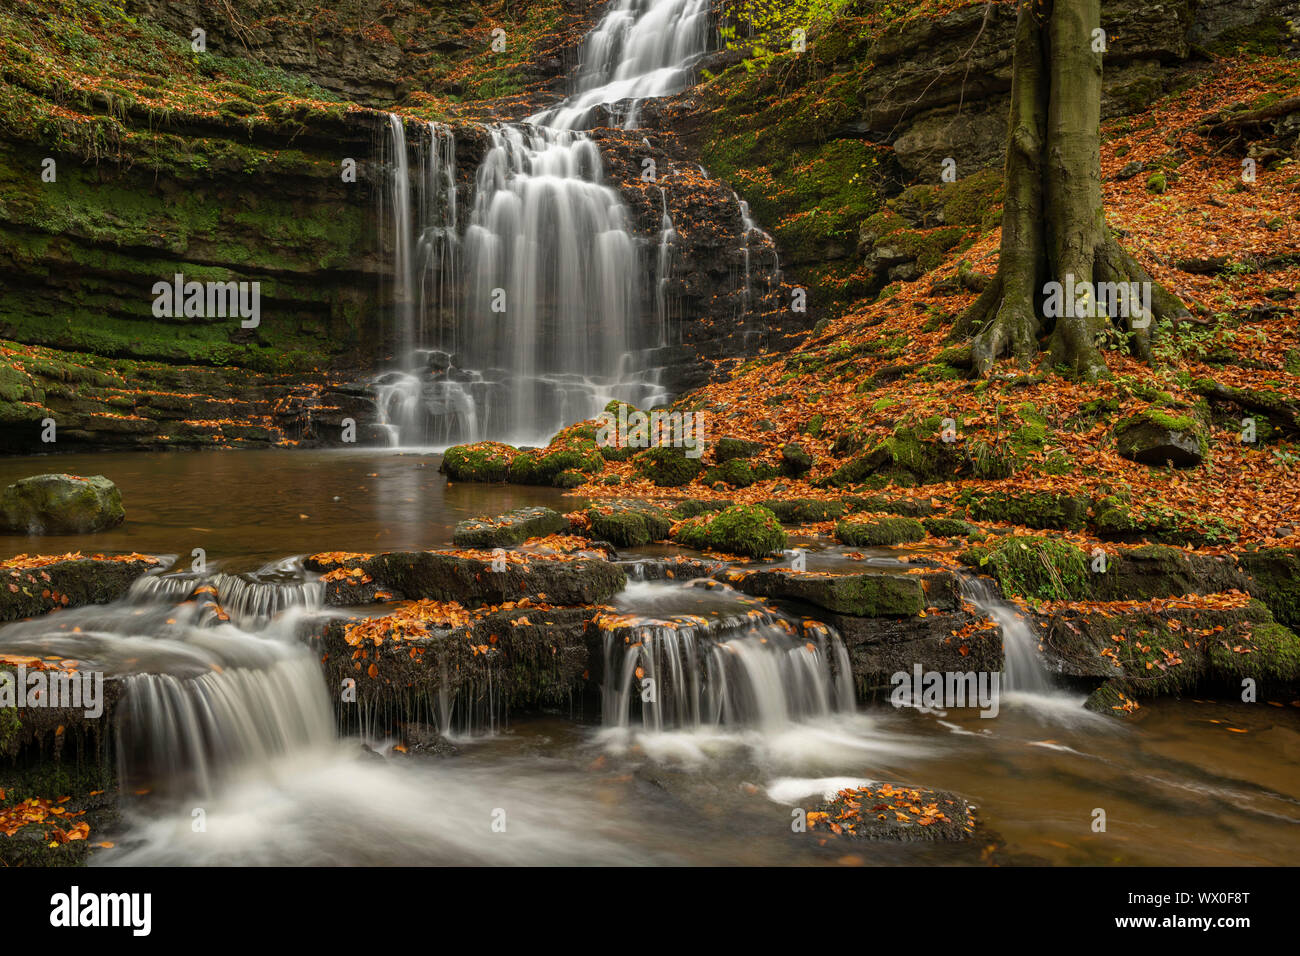 Scaleber cascade de la Force à l'automne, le Parc National des Yorkshire Dales, Yorkshire, Angleterre, Royaume-Uni, Europe Banque D'Images